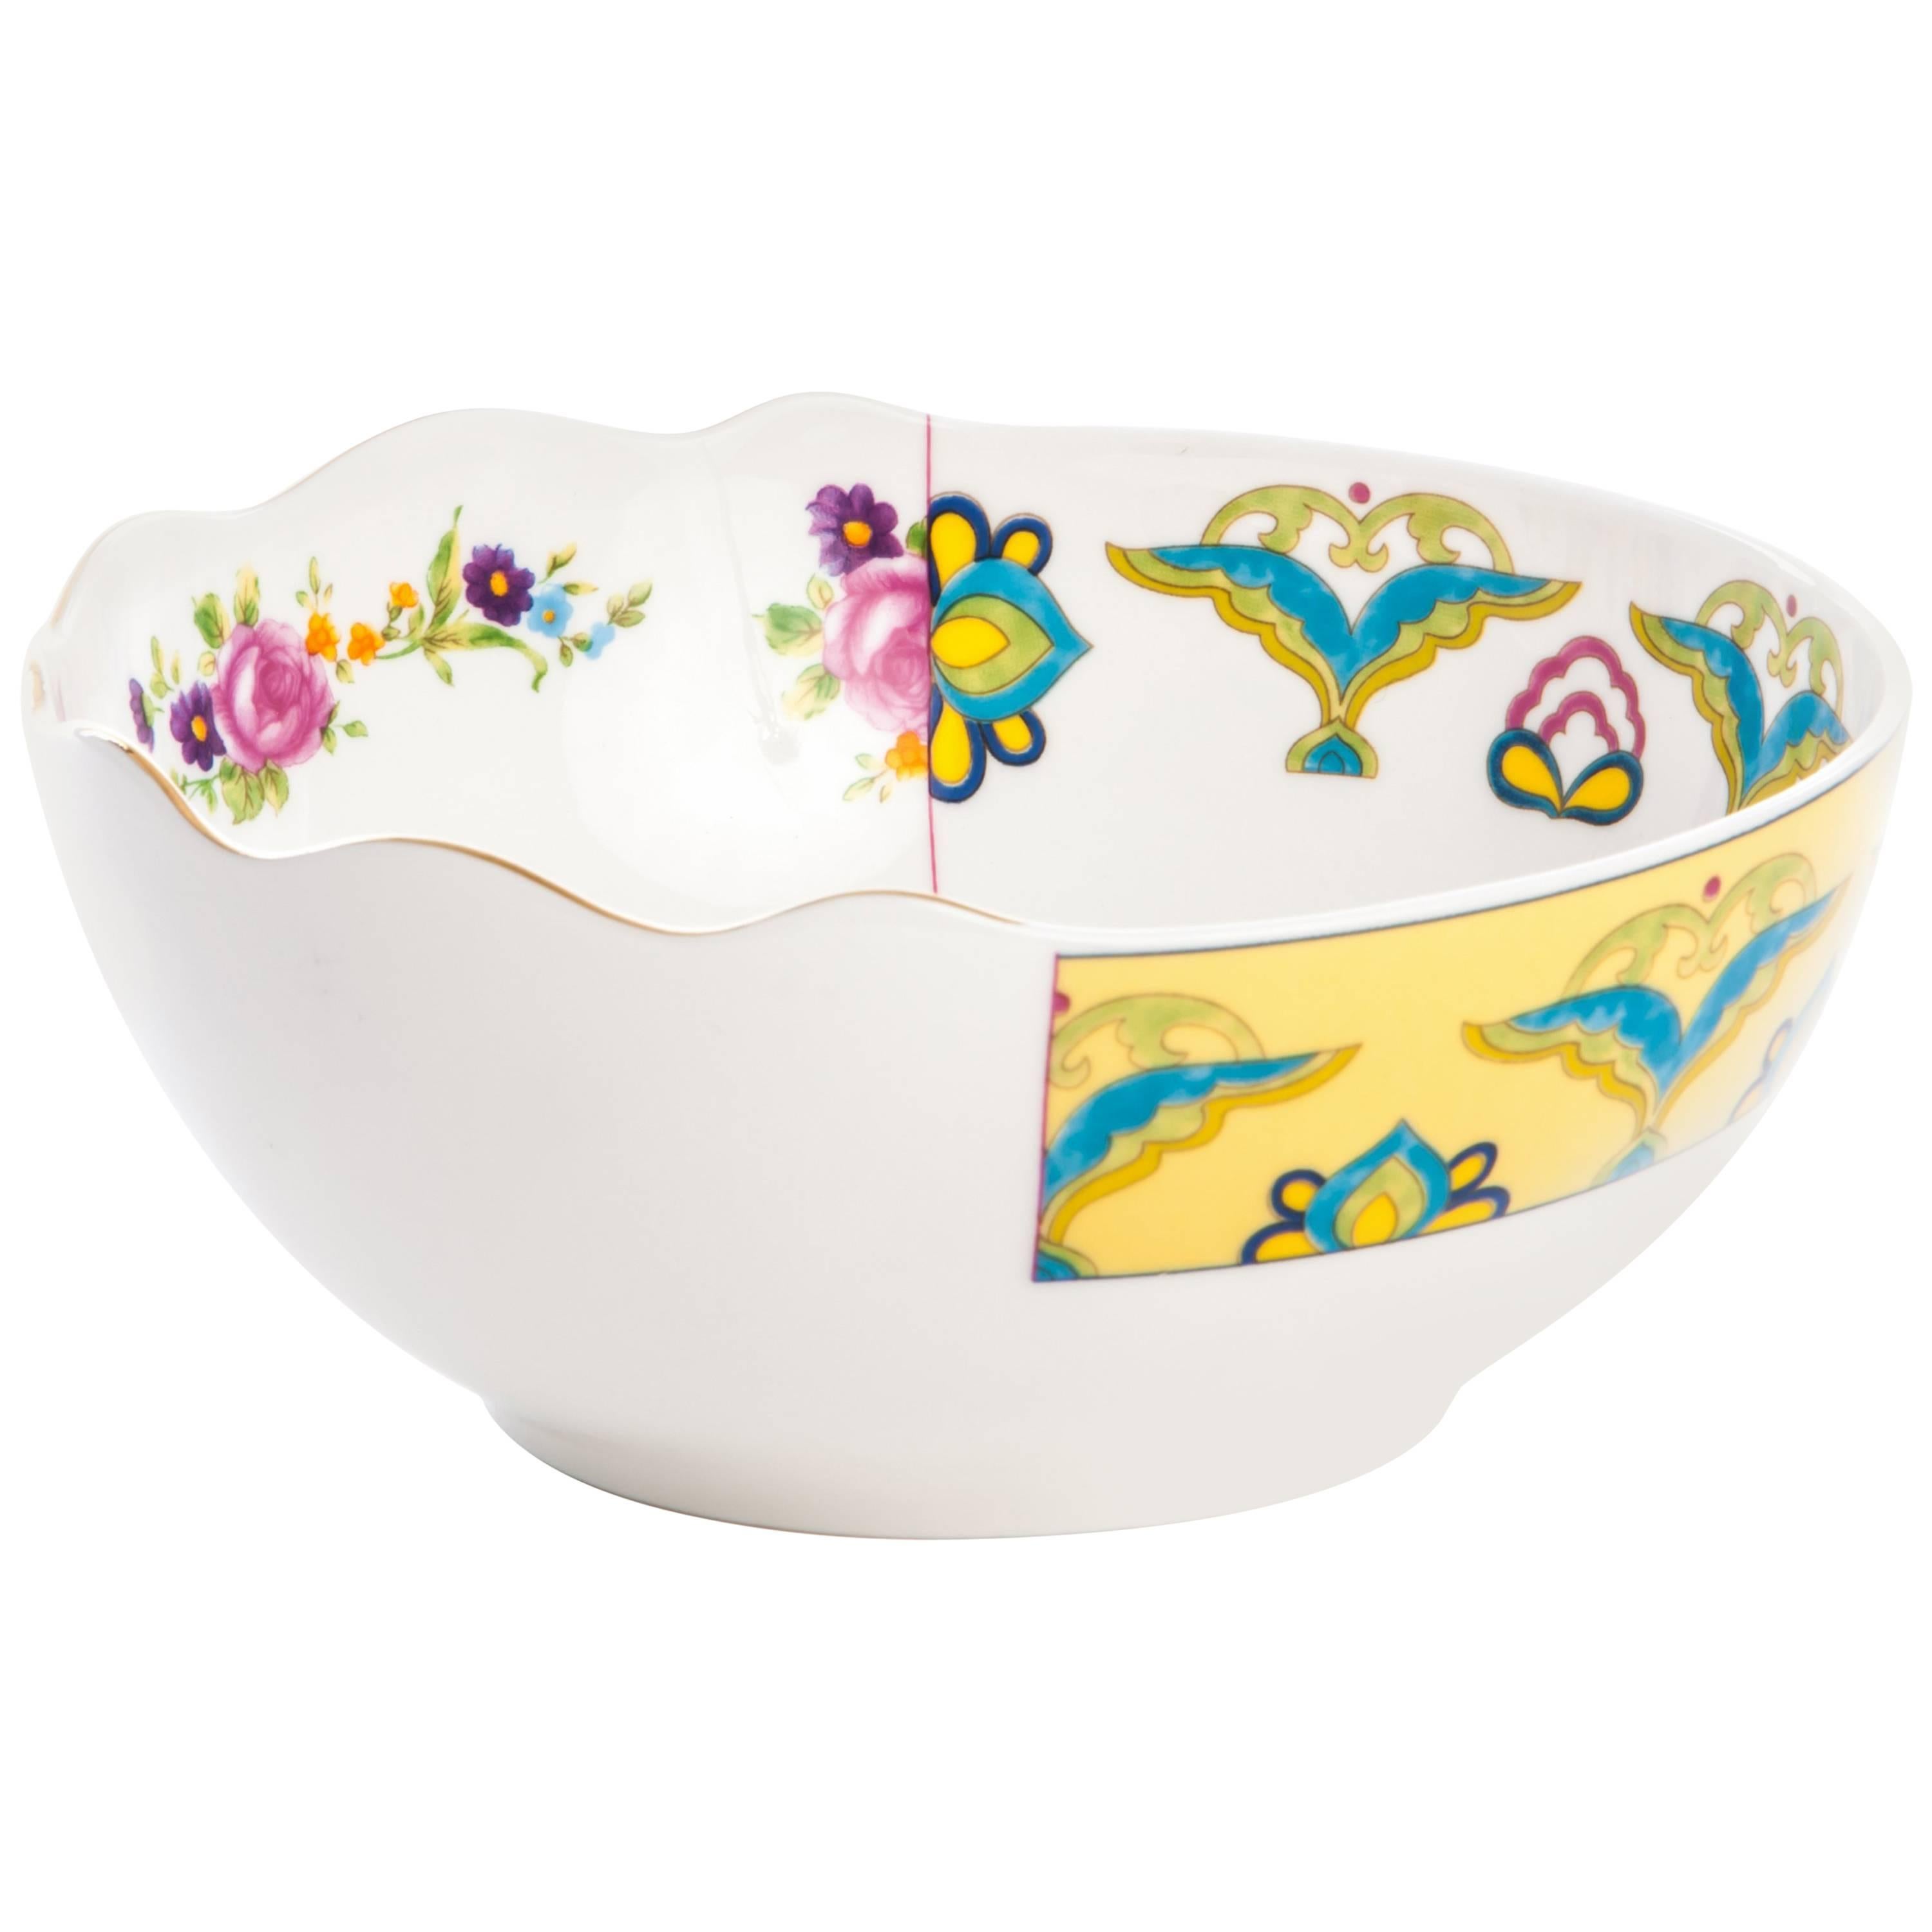 Seletti "Hybrid-Bauci" Bowl in Porcelain